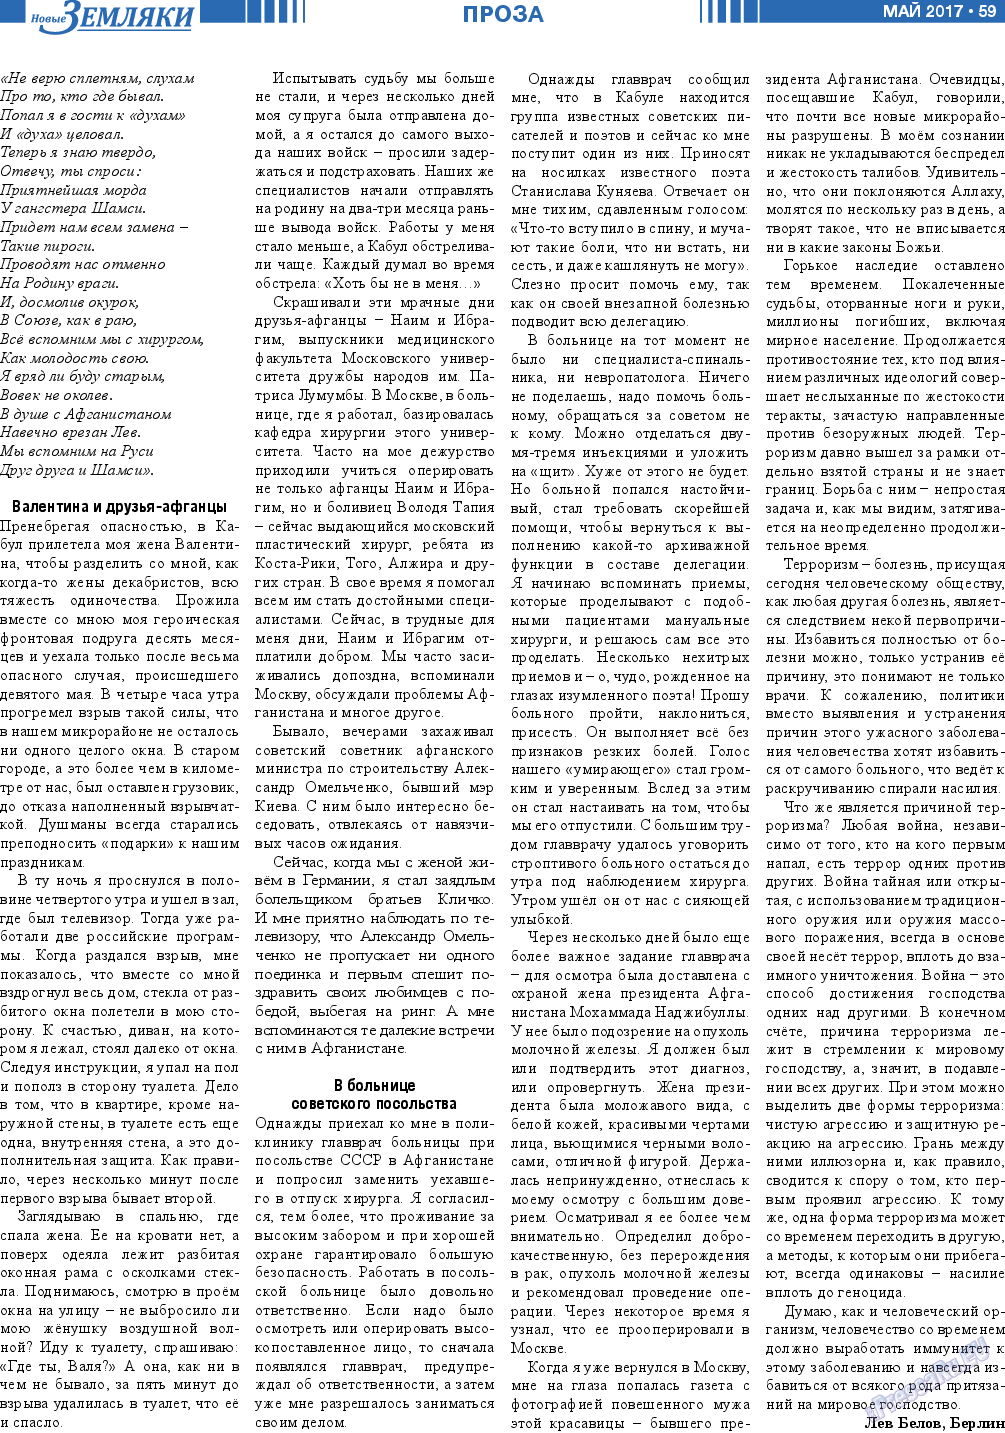 Новые Земляки, газета. 2017 №5 стр.59